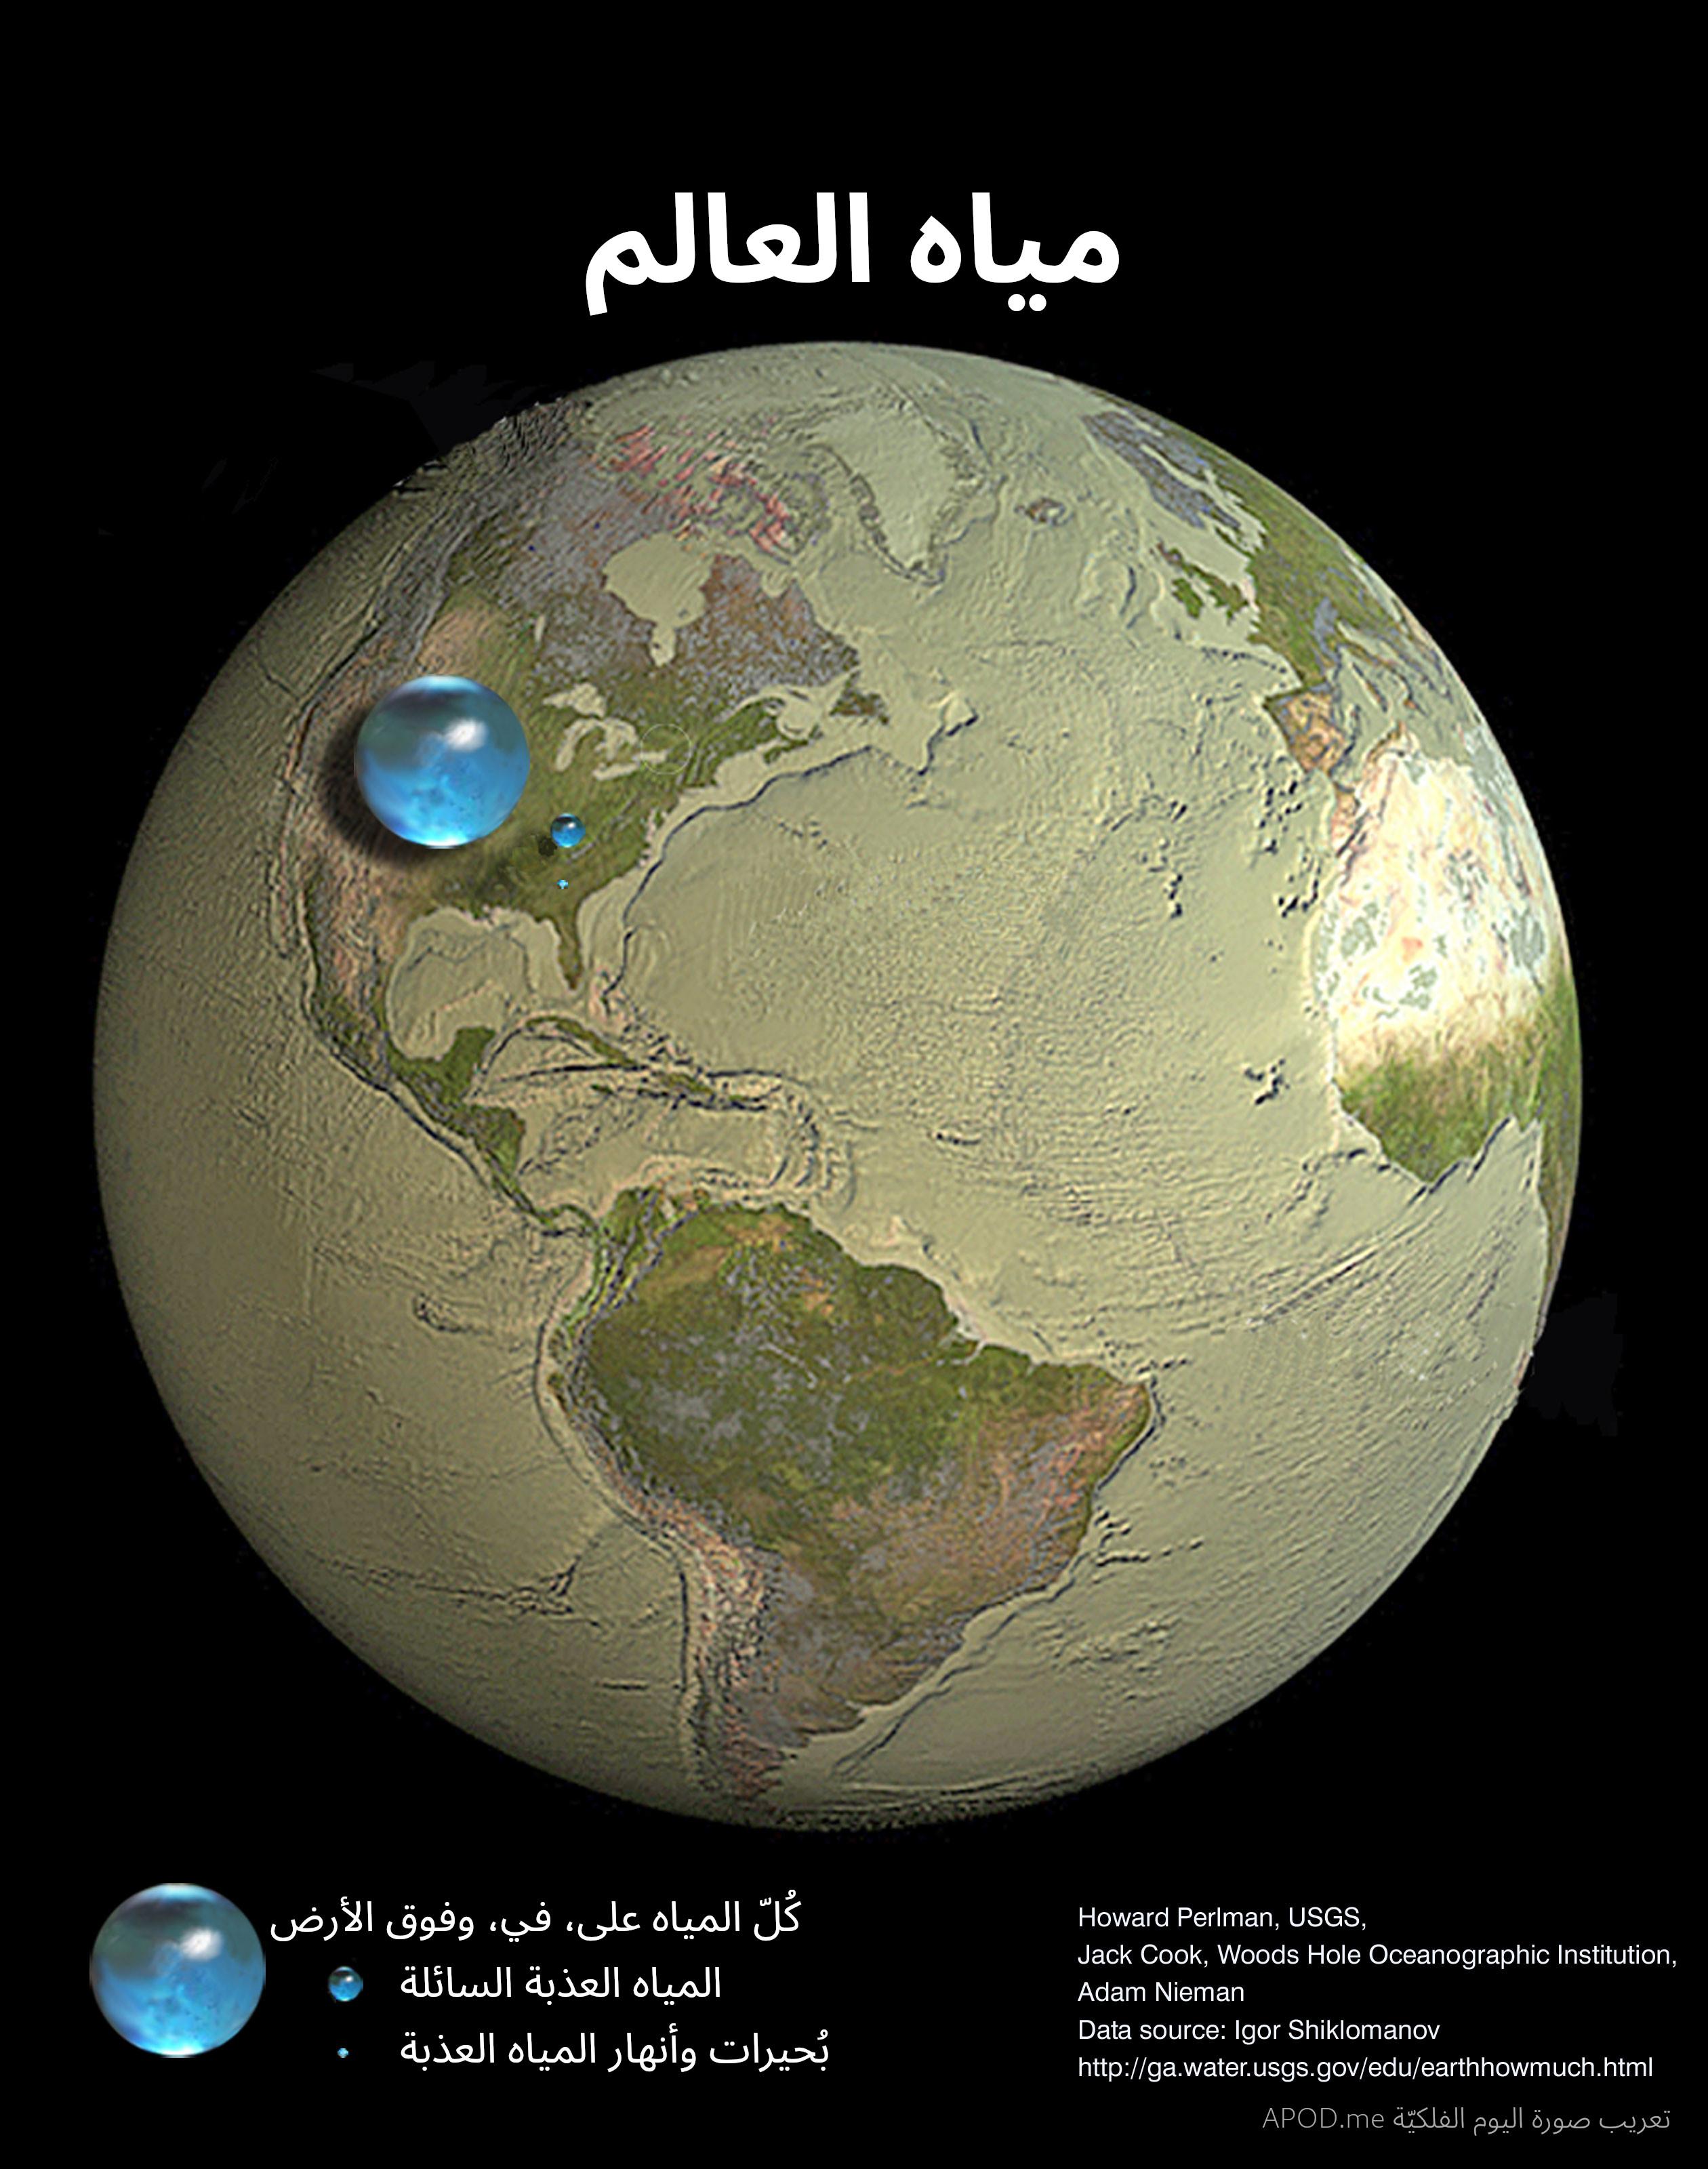 رسم توضيحي يُظهر كيف يمكن للأرض أن تبدو بدون مياه، بينما تمثّل كُريات زرقاء كلّية الماء العذب وماء المحيطات على الأرض في أعلى اليسار